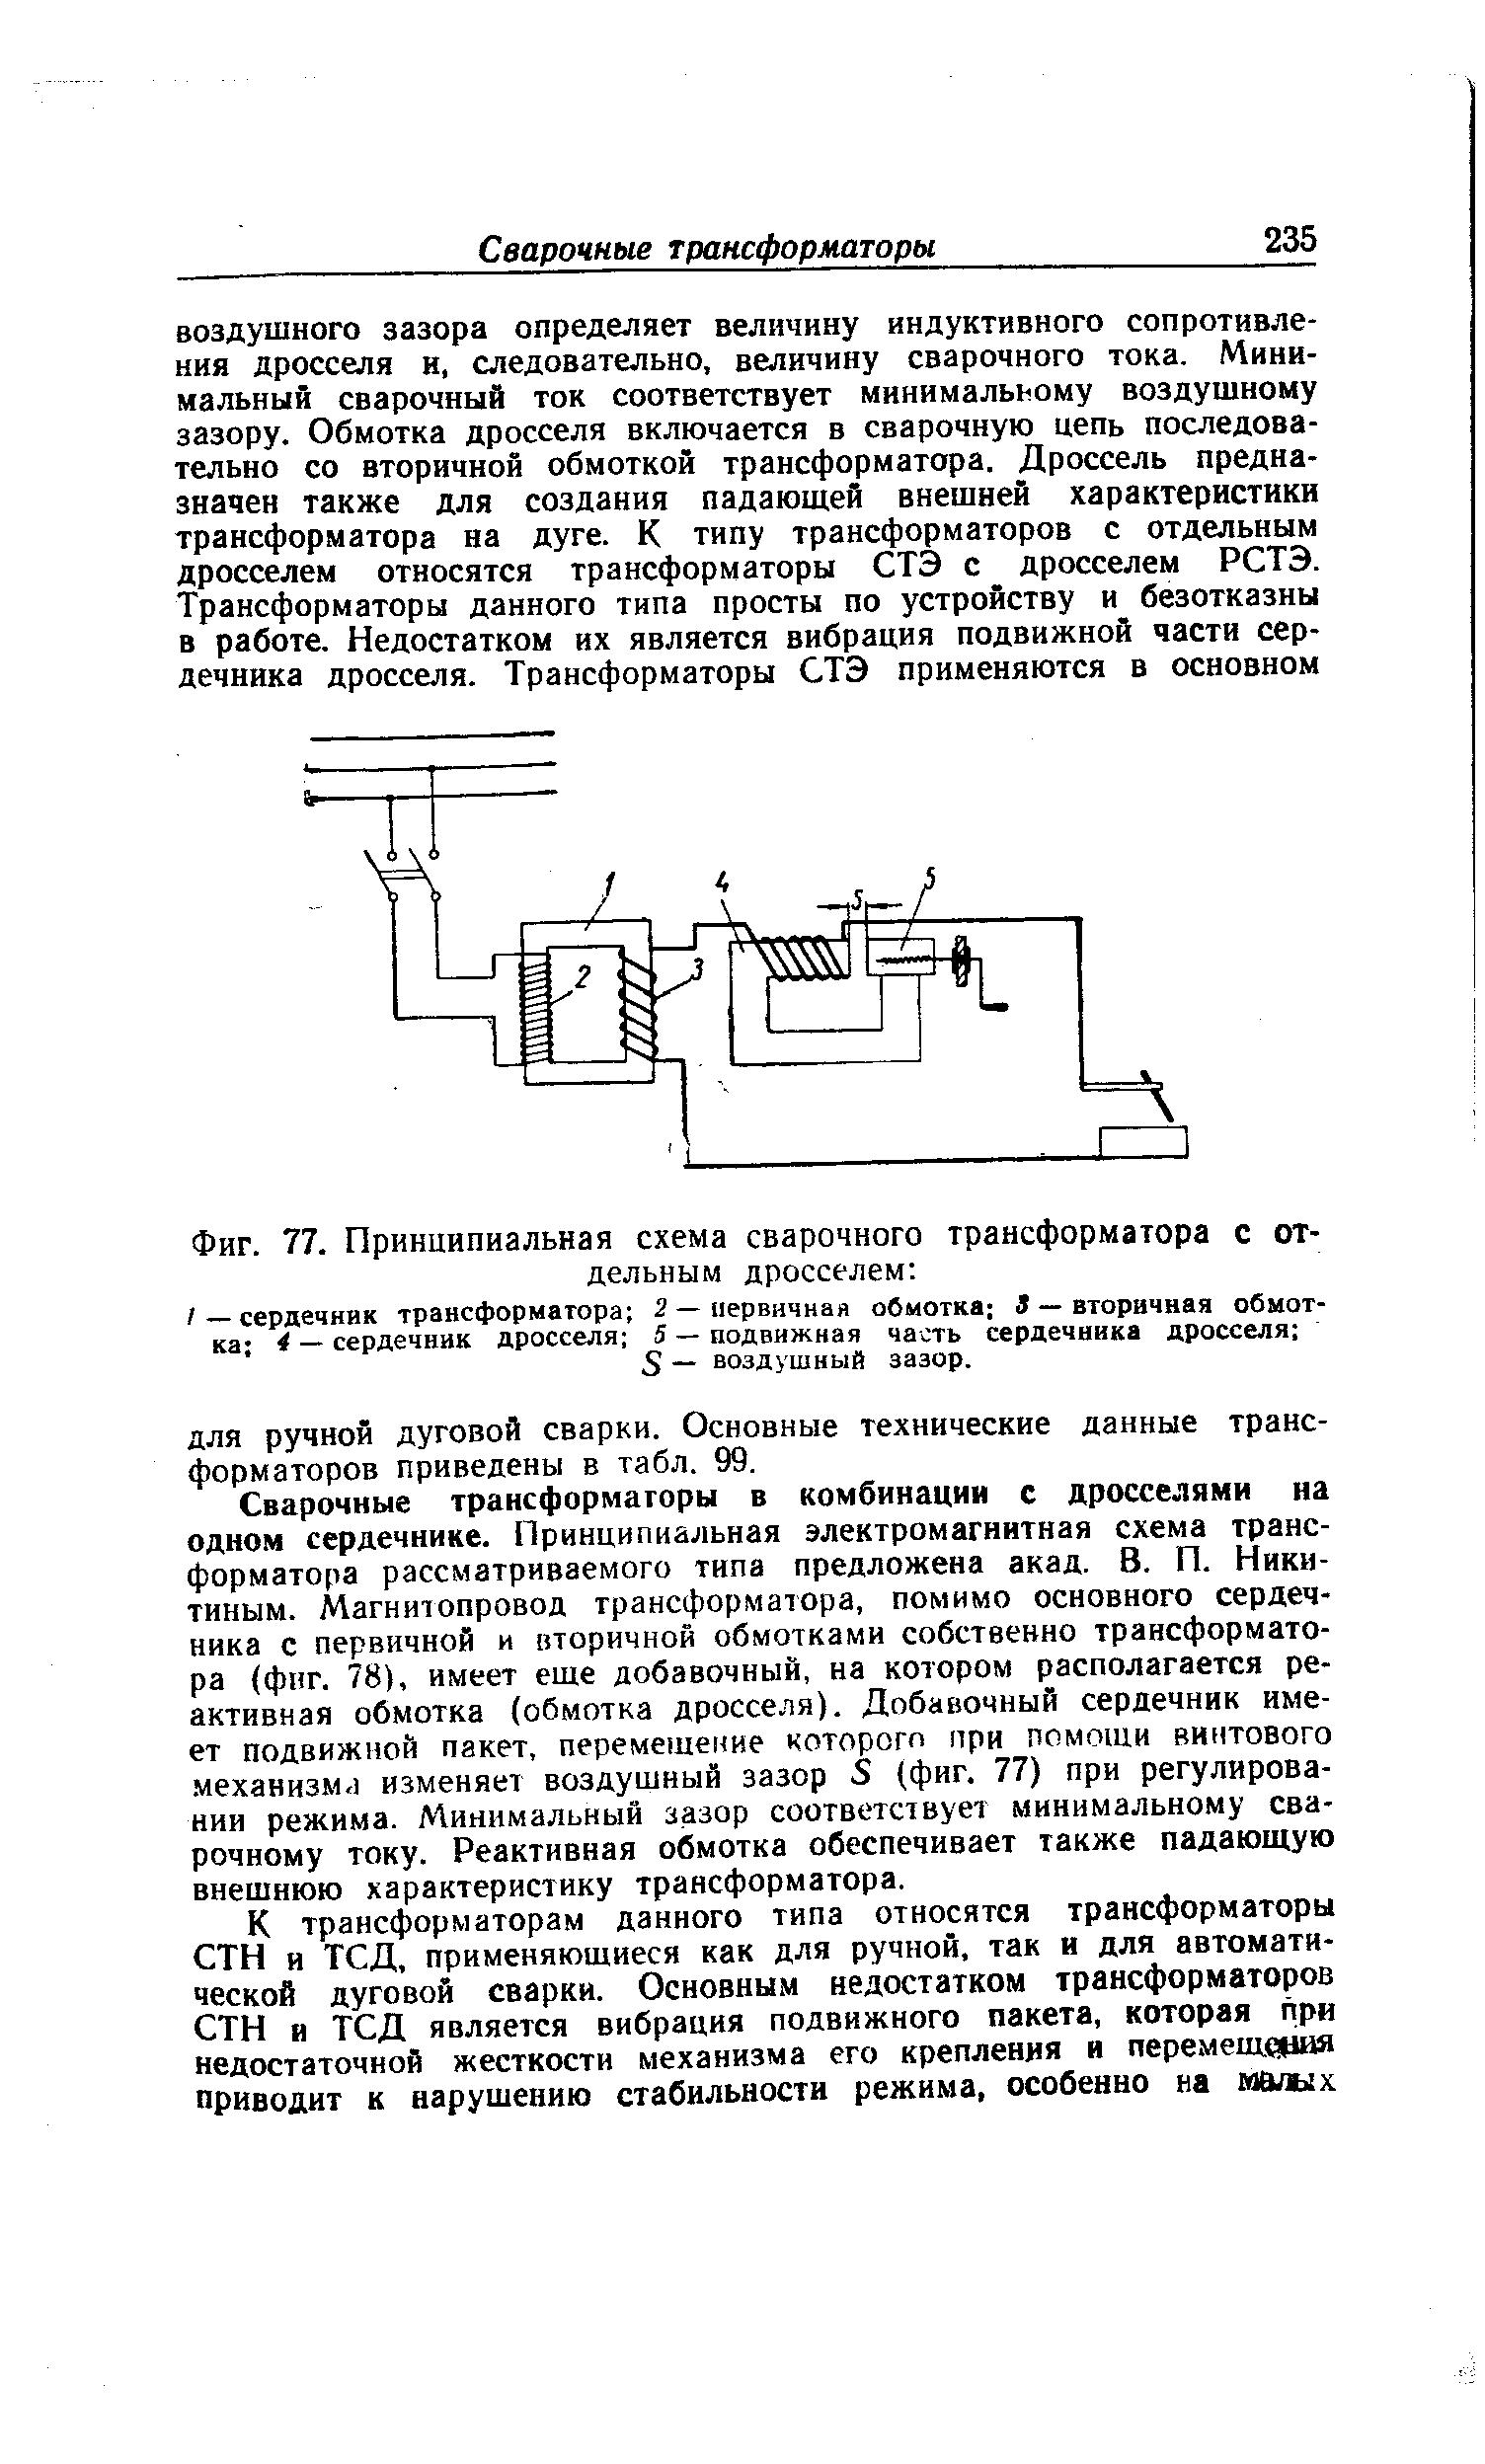 Фиг. 77. Принципиальная схема сварочного трансформатора с отдельным дросселем 
